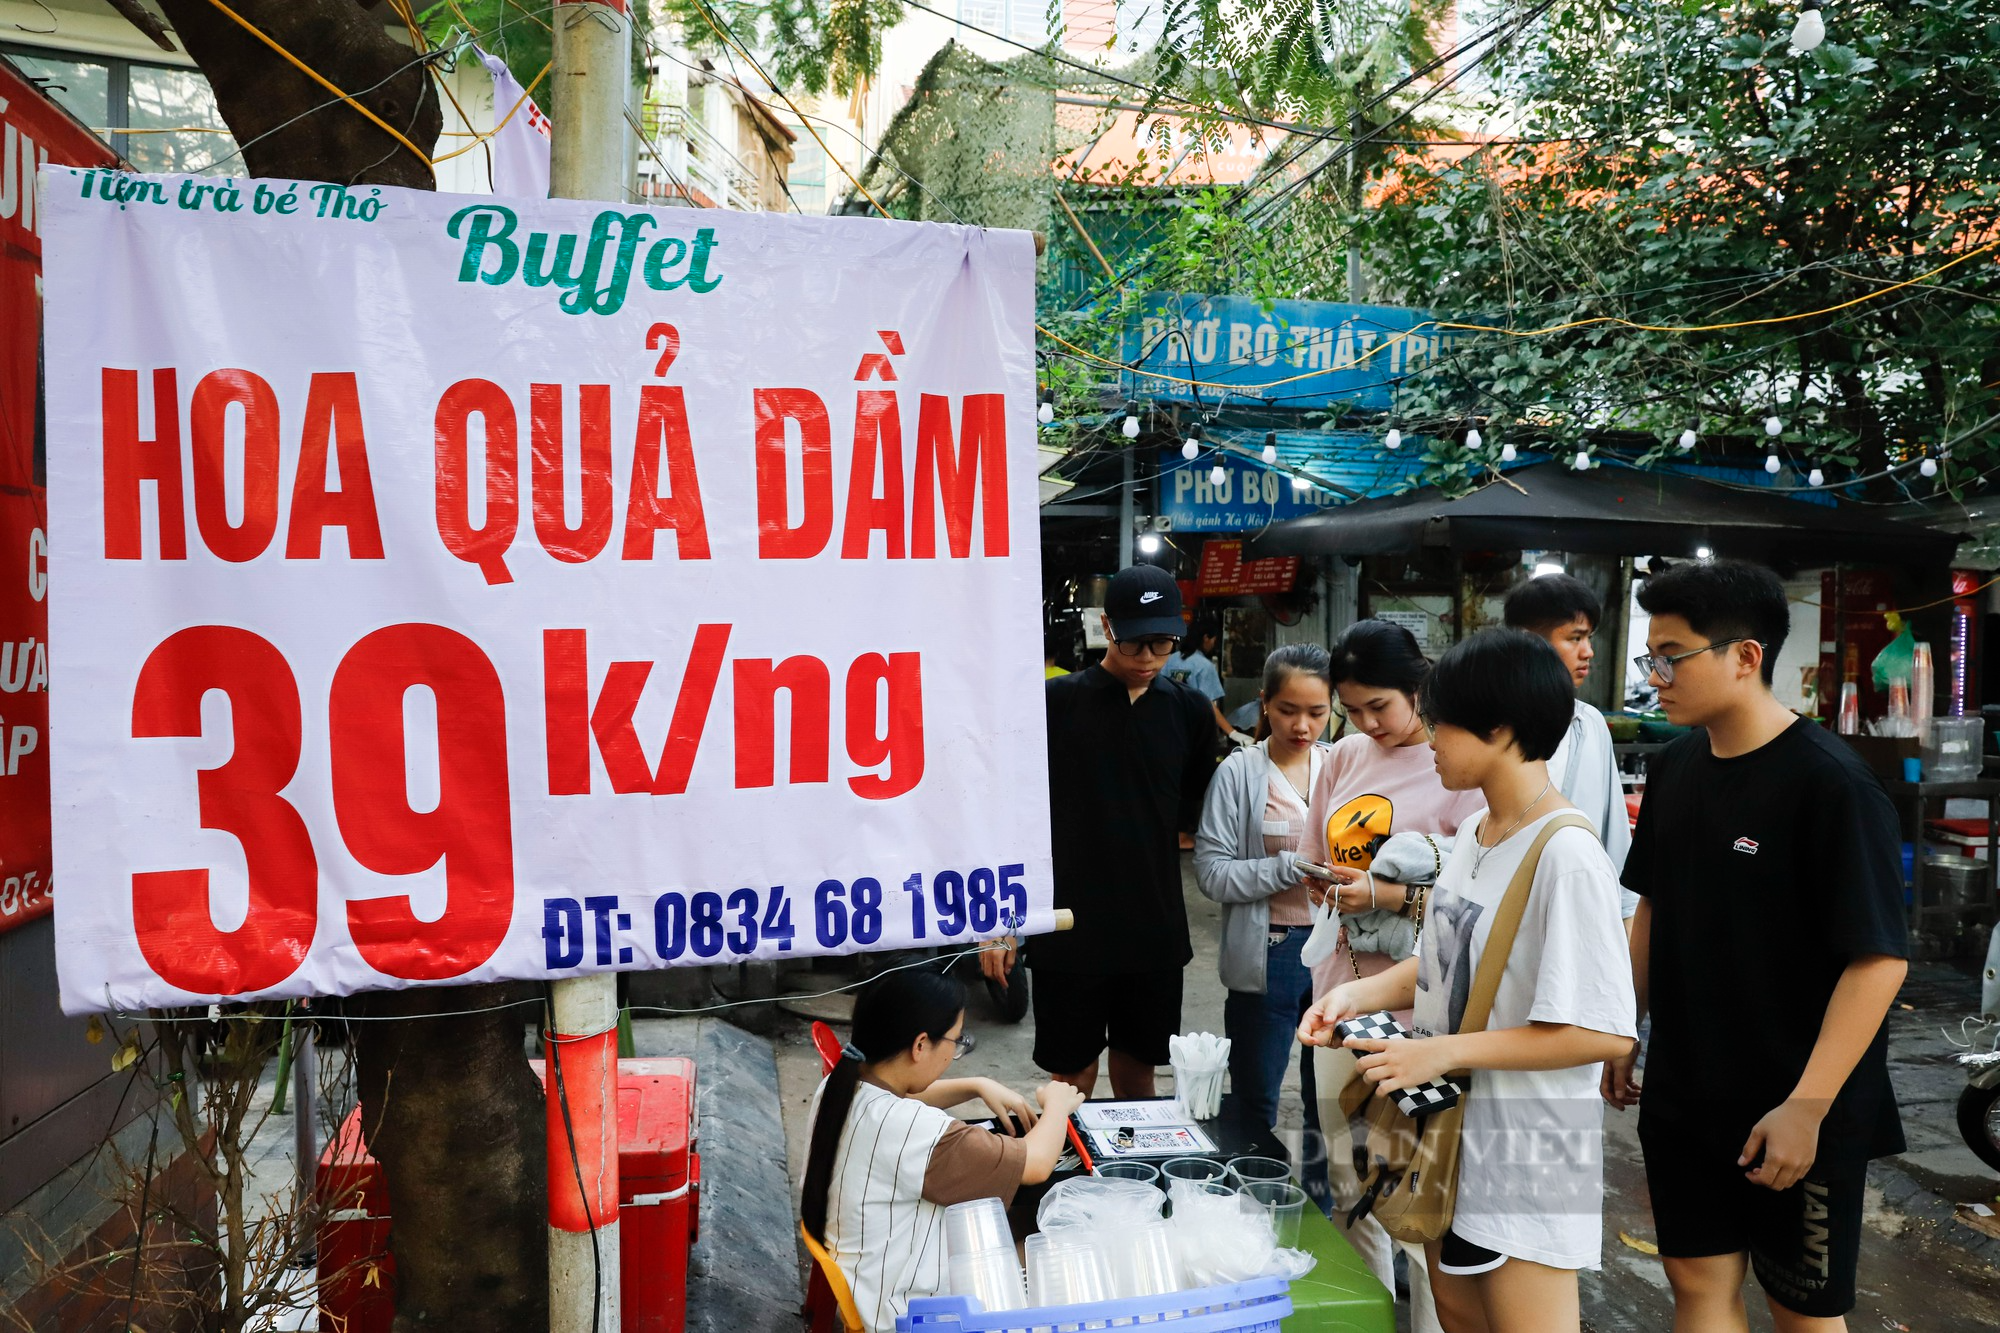 Buffet hoa quả giá siêu rẻ đổ bộ Hà Nội, nhân viên mỏi tay gọt hàng trăm kg/ngày - Ảnh 1.